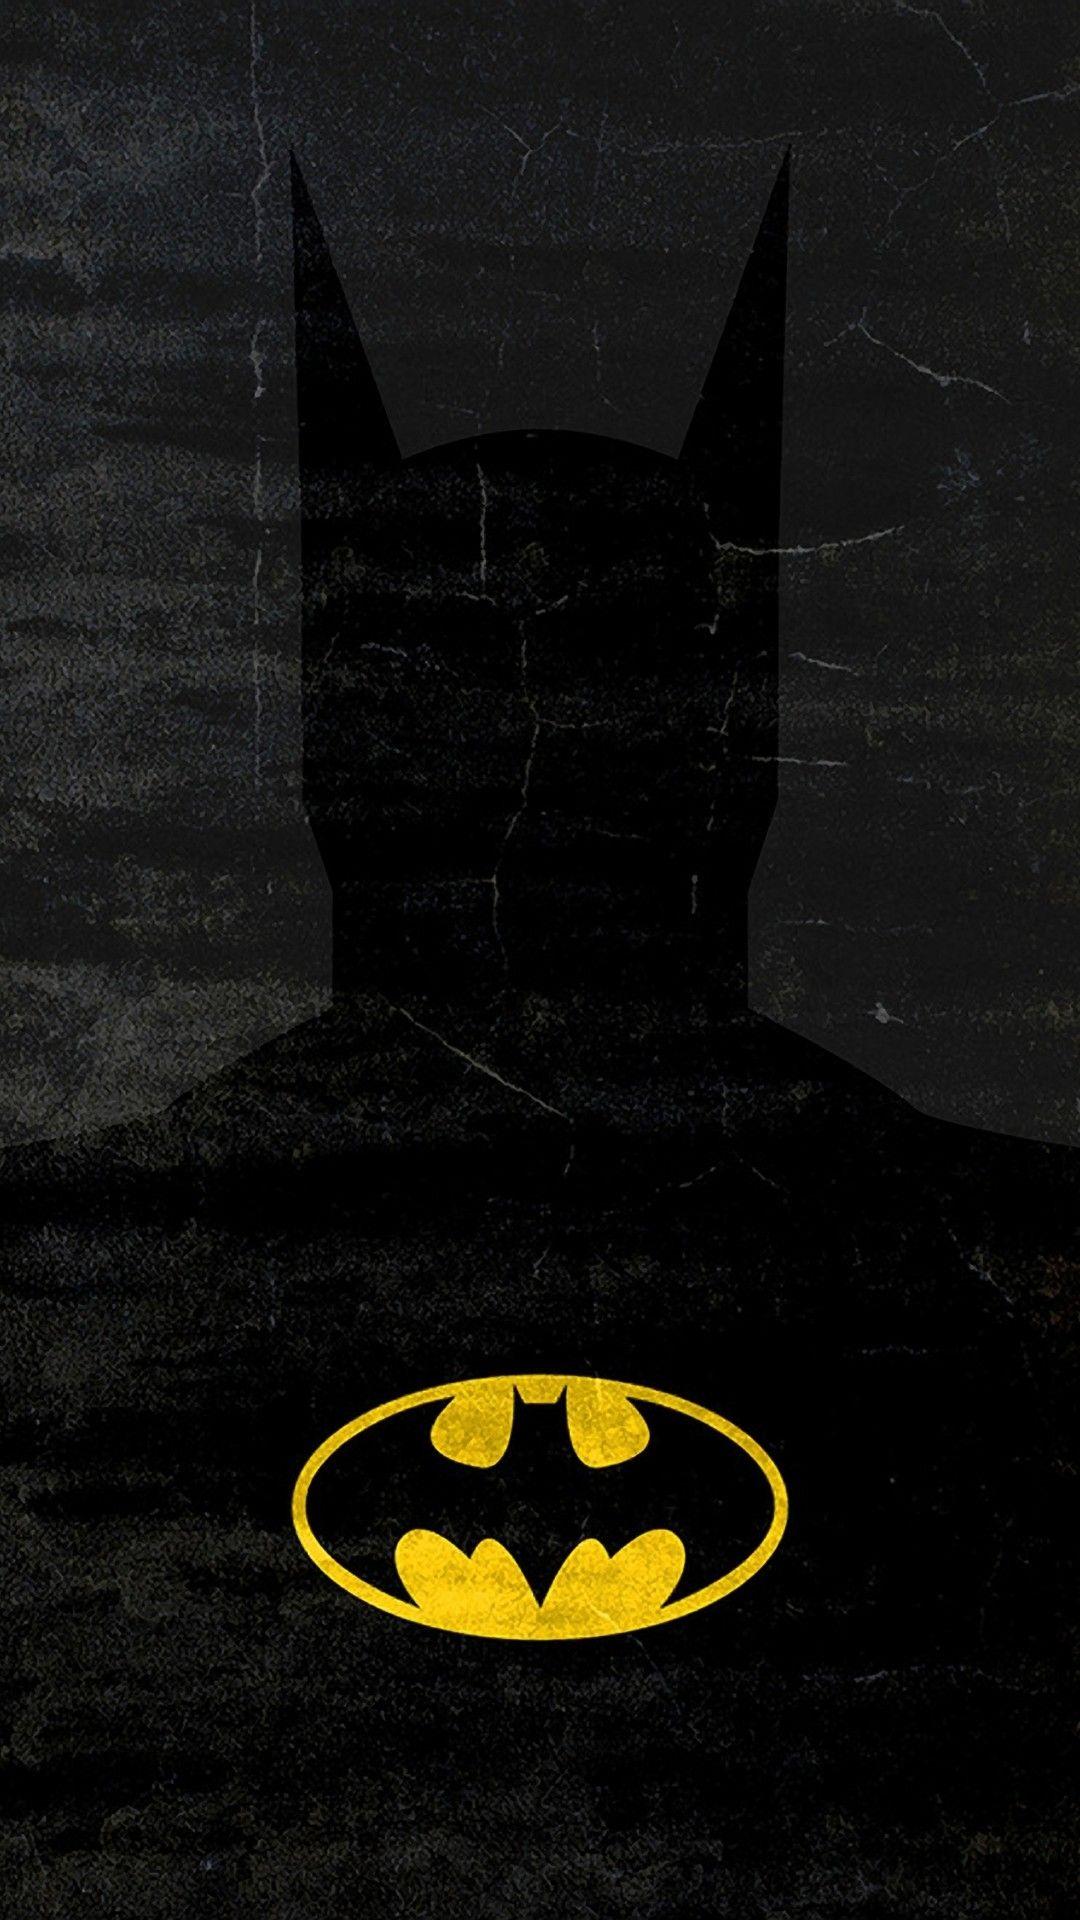 Batman screensaver phone wallpapers